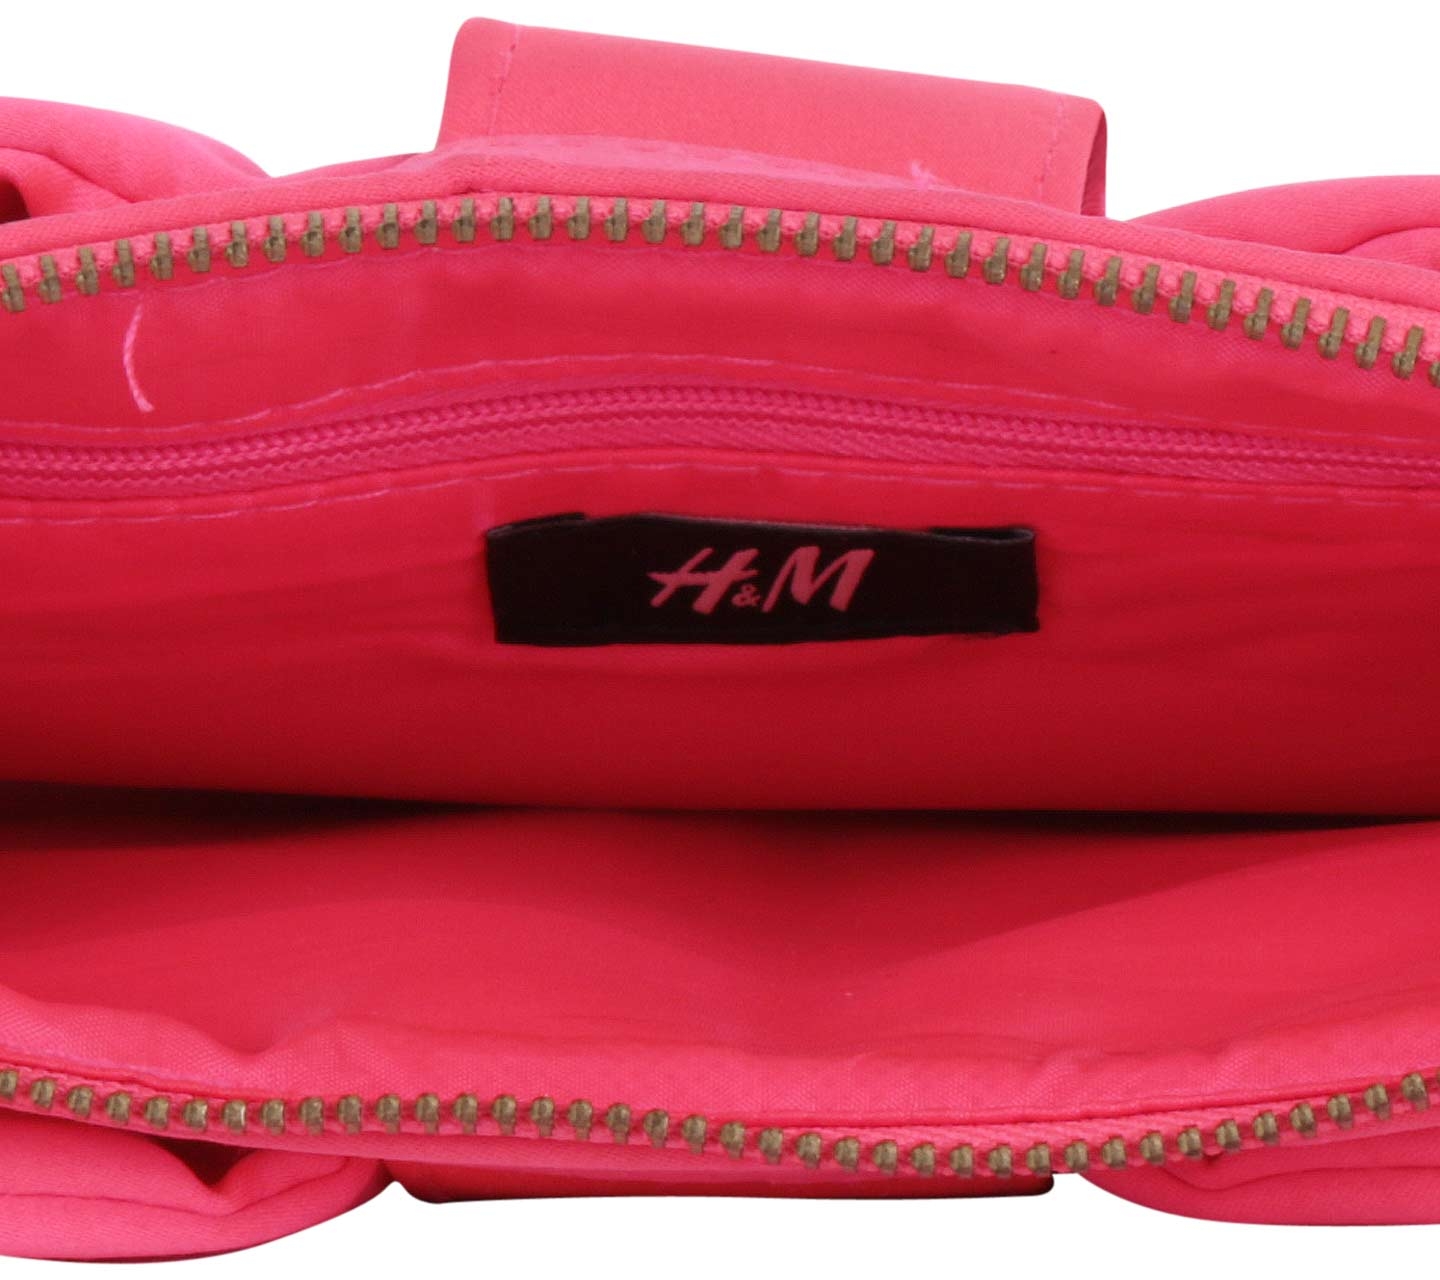 H&M Pink Ribbon Clutch